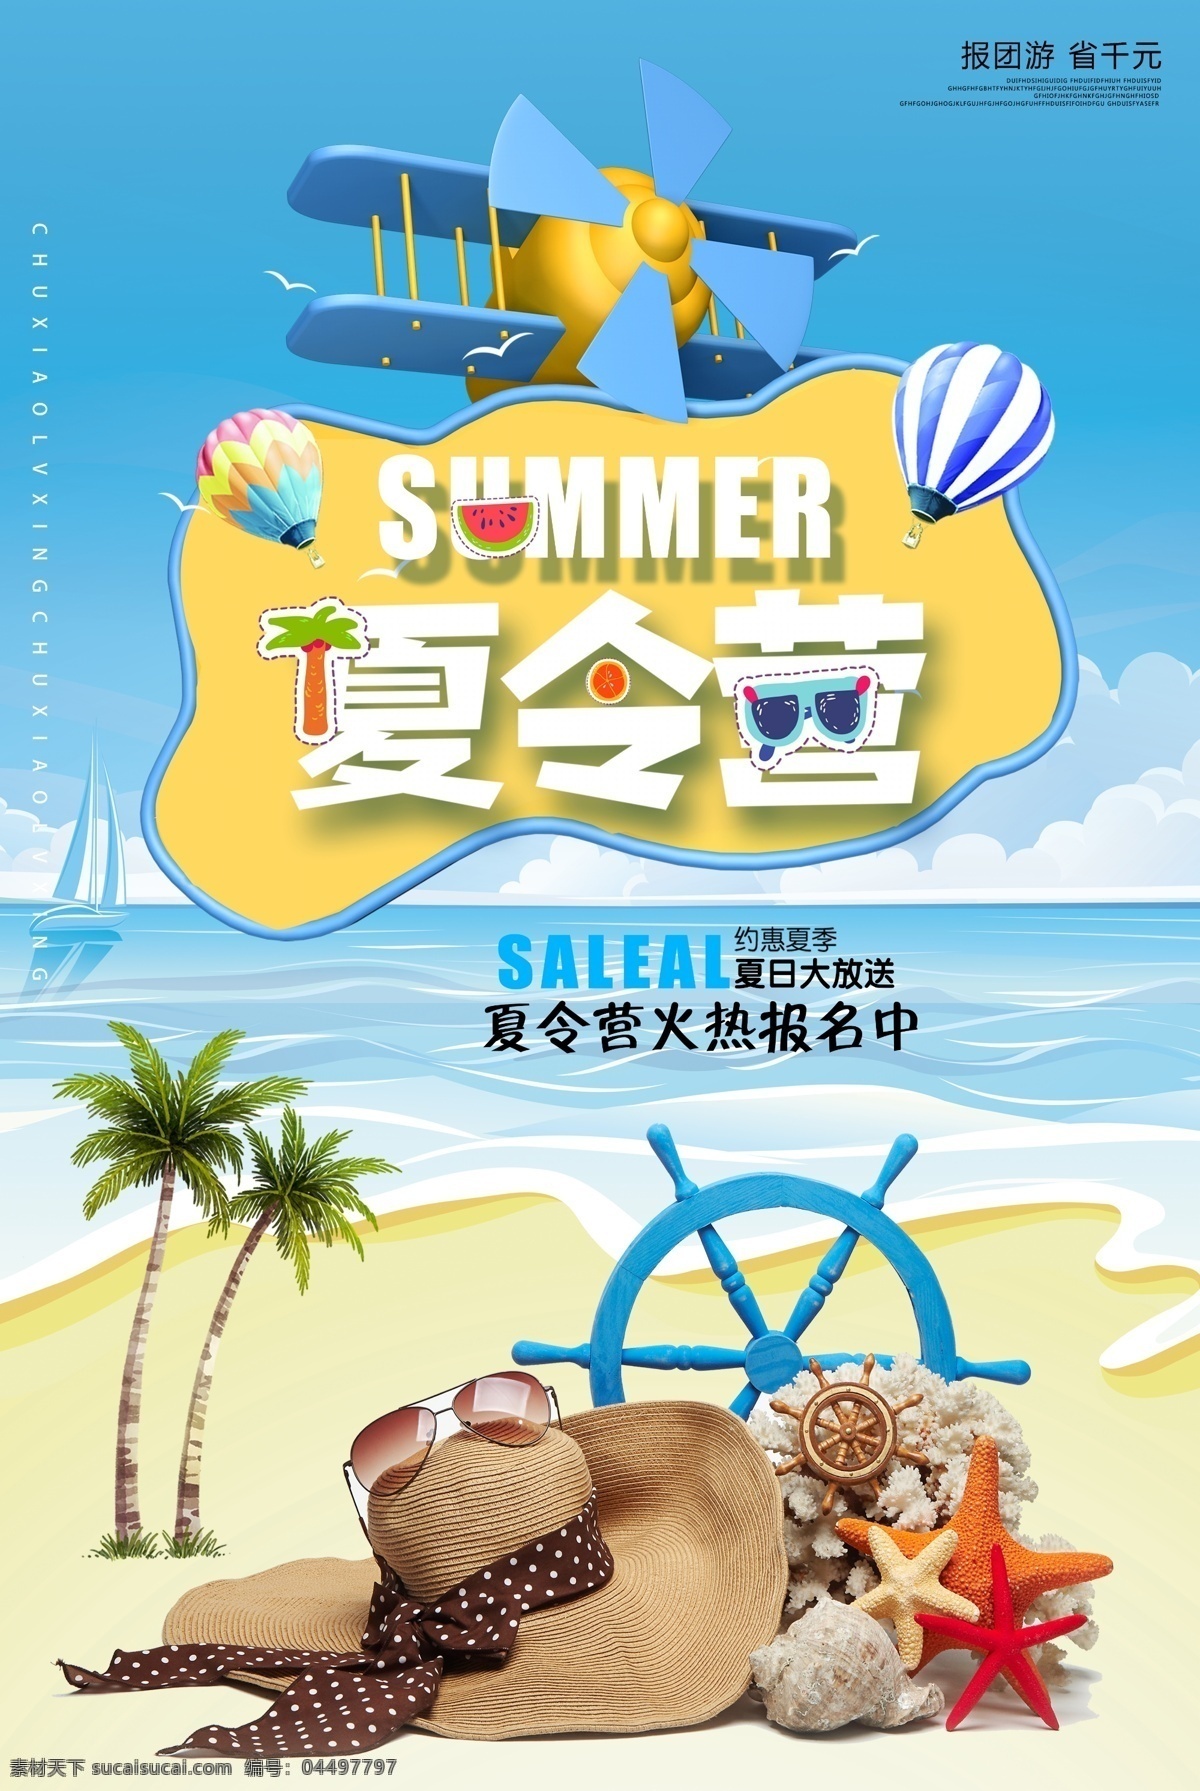 夏令营 旅游活动 宣传海报 素材图片 旅游 活动 宣传 海报 旅行